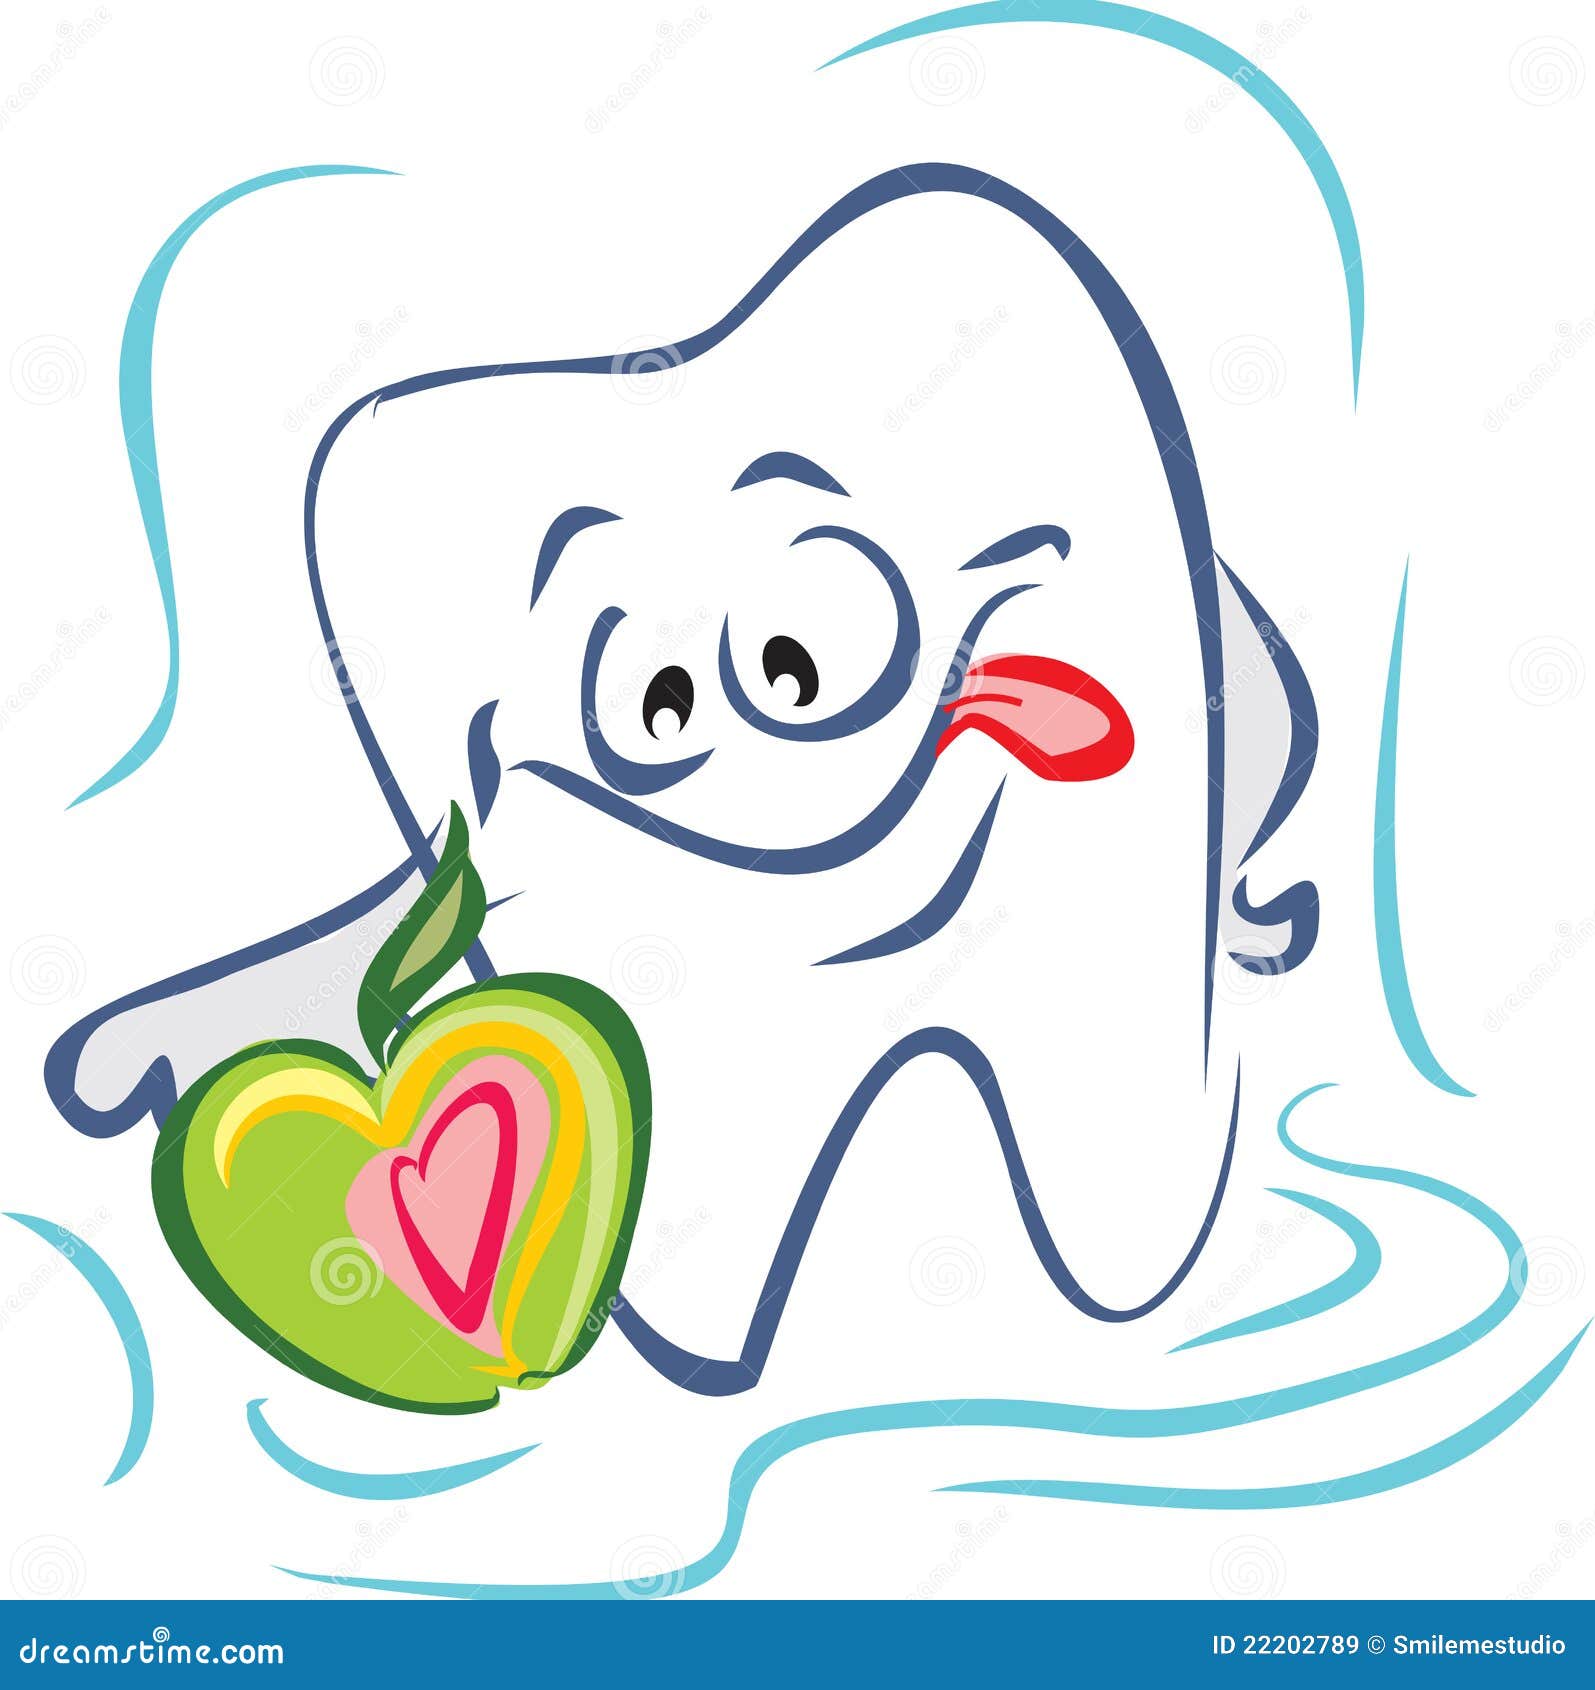 Рисунок на тему здоровые зубки счастливые улыбки: Презентация ко дню здоровья "Здоровые зубки"